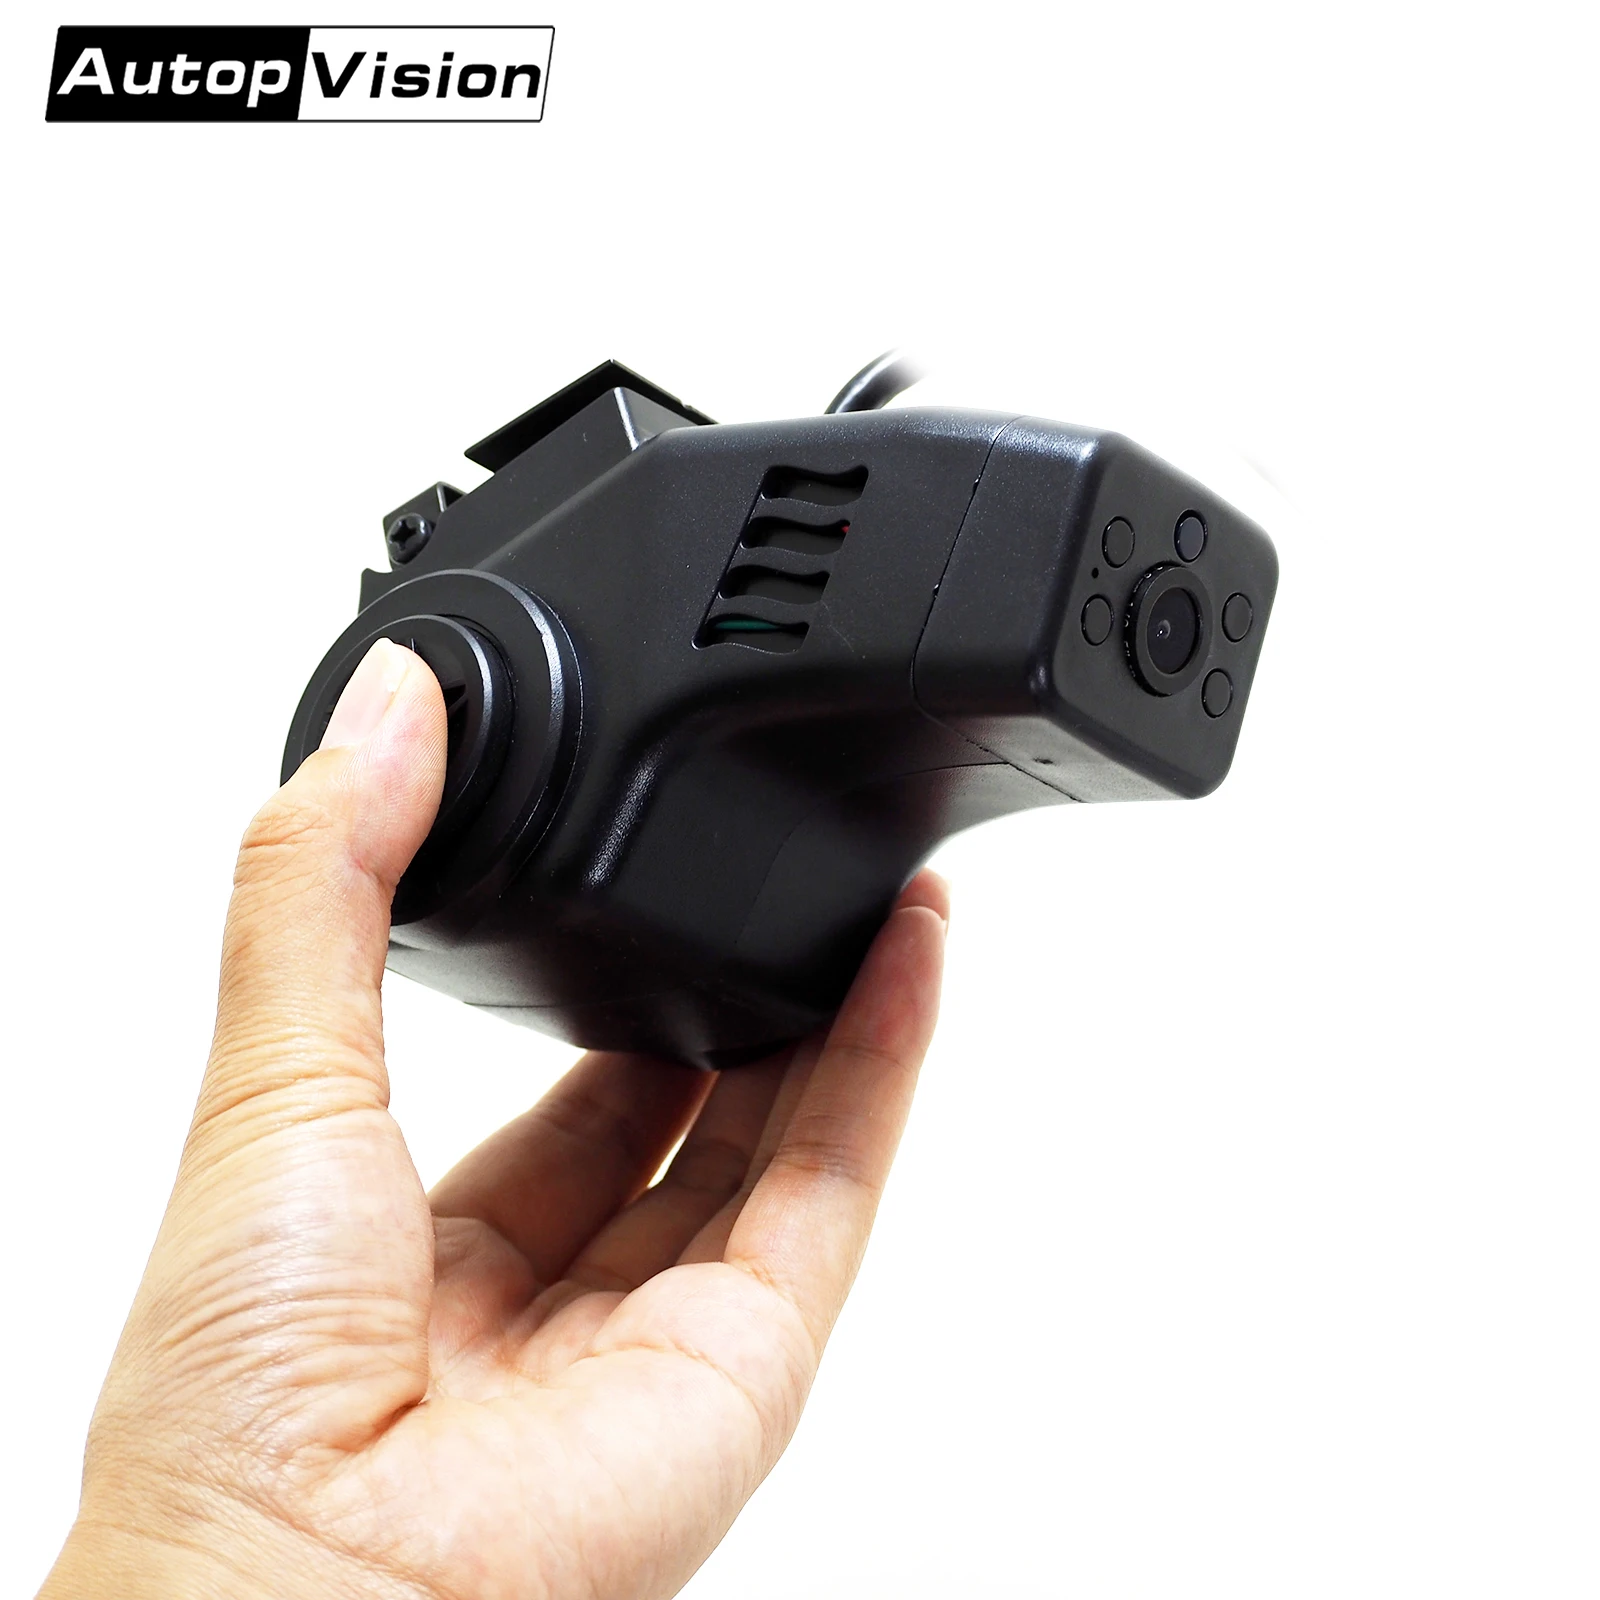 Передняя и задняя двойная камера s AHD для автомобиля, купольная камера безопасности ночного видения с зеркальным видеорегистратором для так...